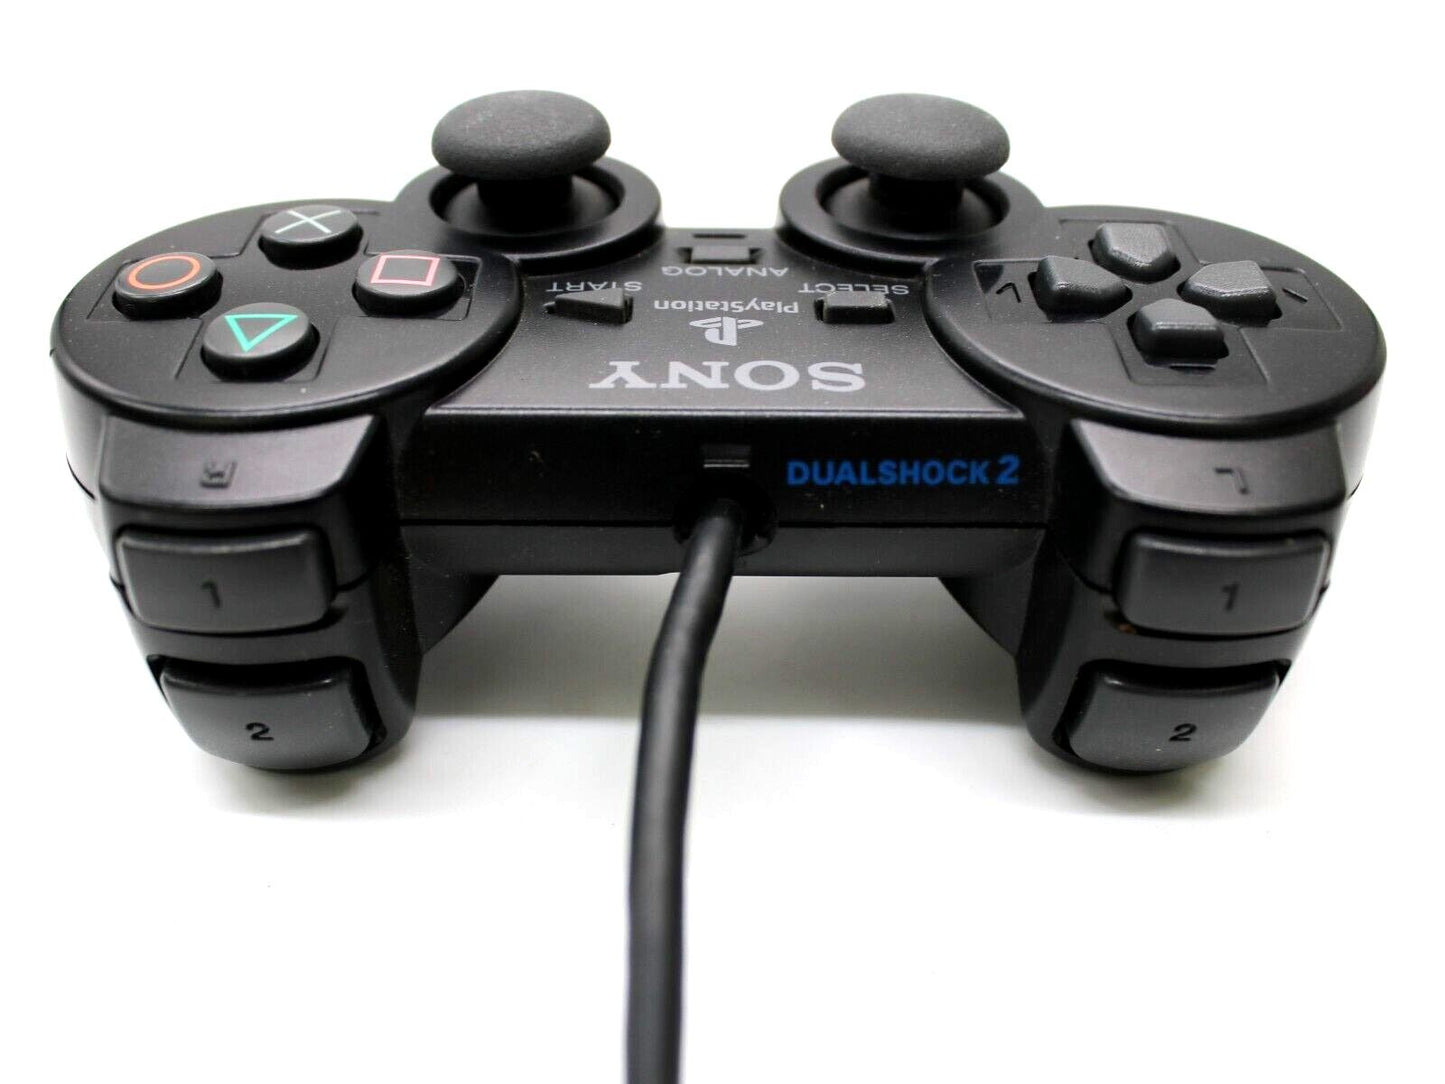 Sony Playstation 2 original Controller Schwarz gebraucht DualShock 2 SCPH-10010